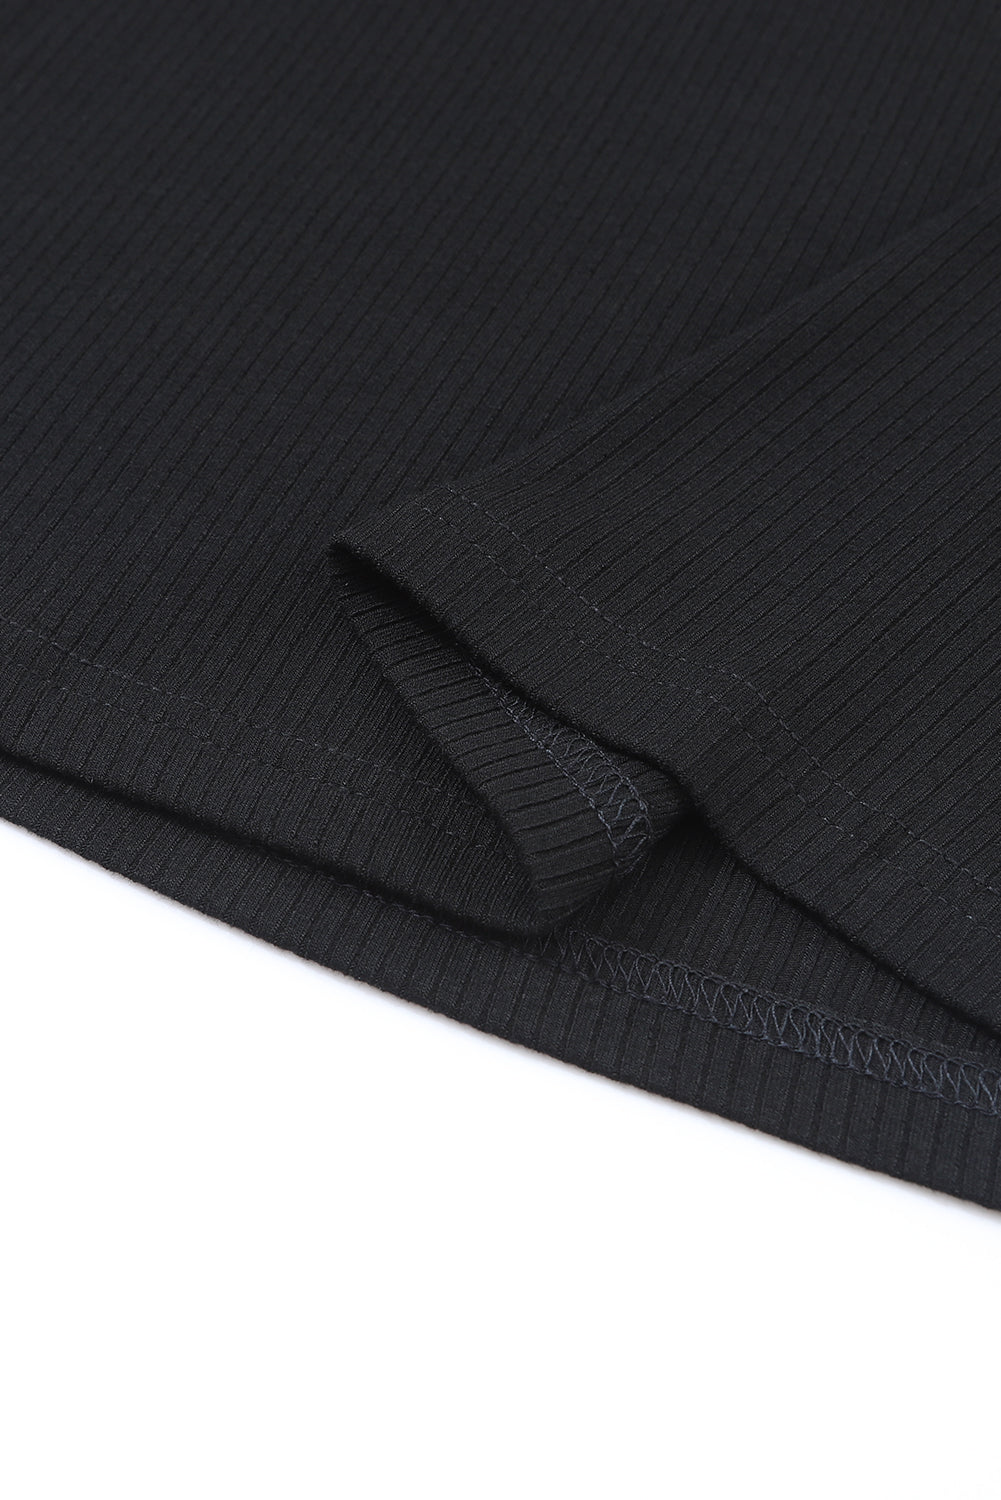 Črna rebrasta pletena majica z dolgimi rokavi z visokim ovratnikom